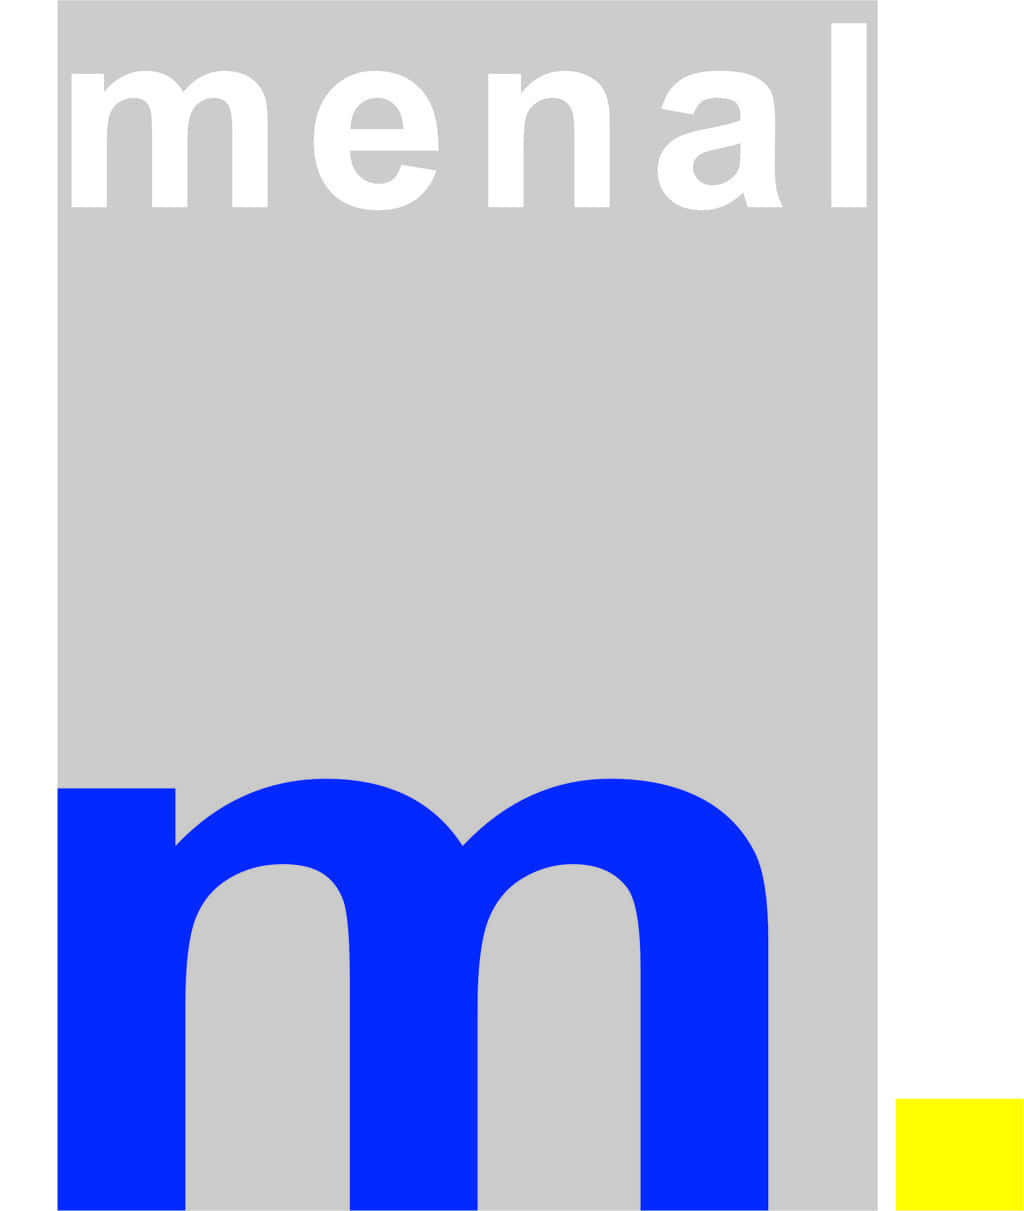 menal GmbH